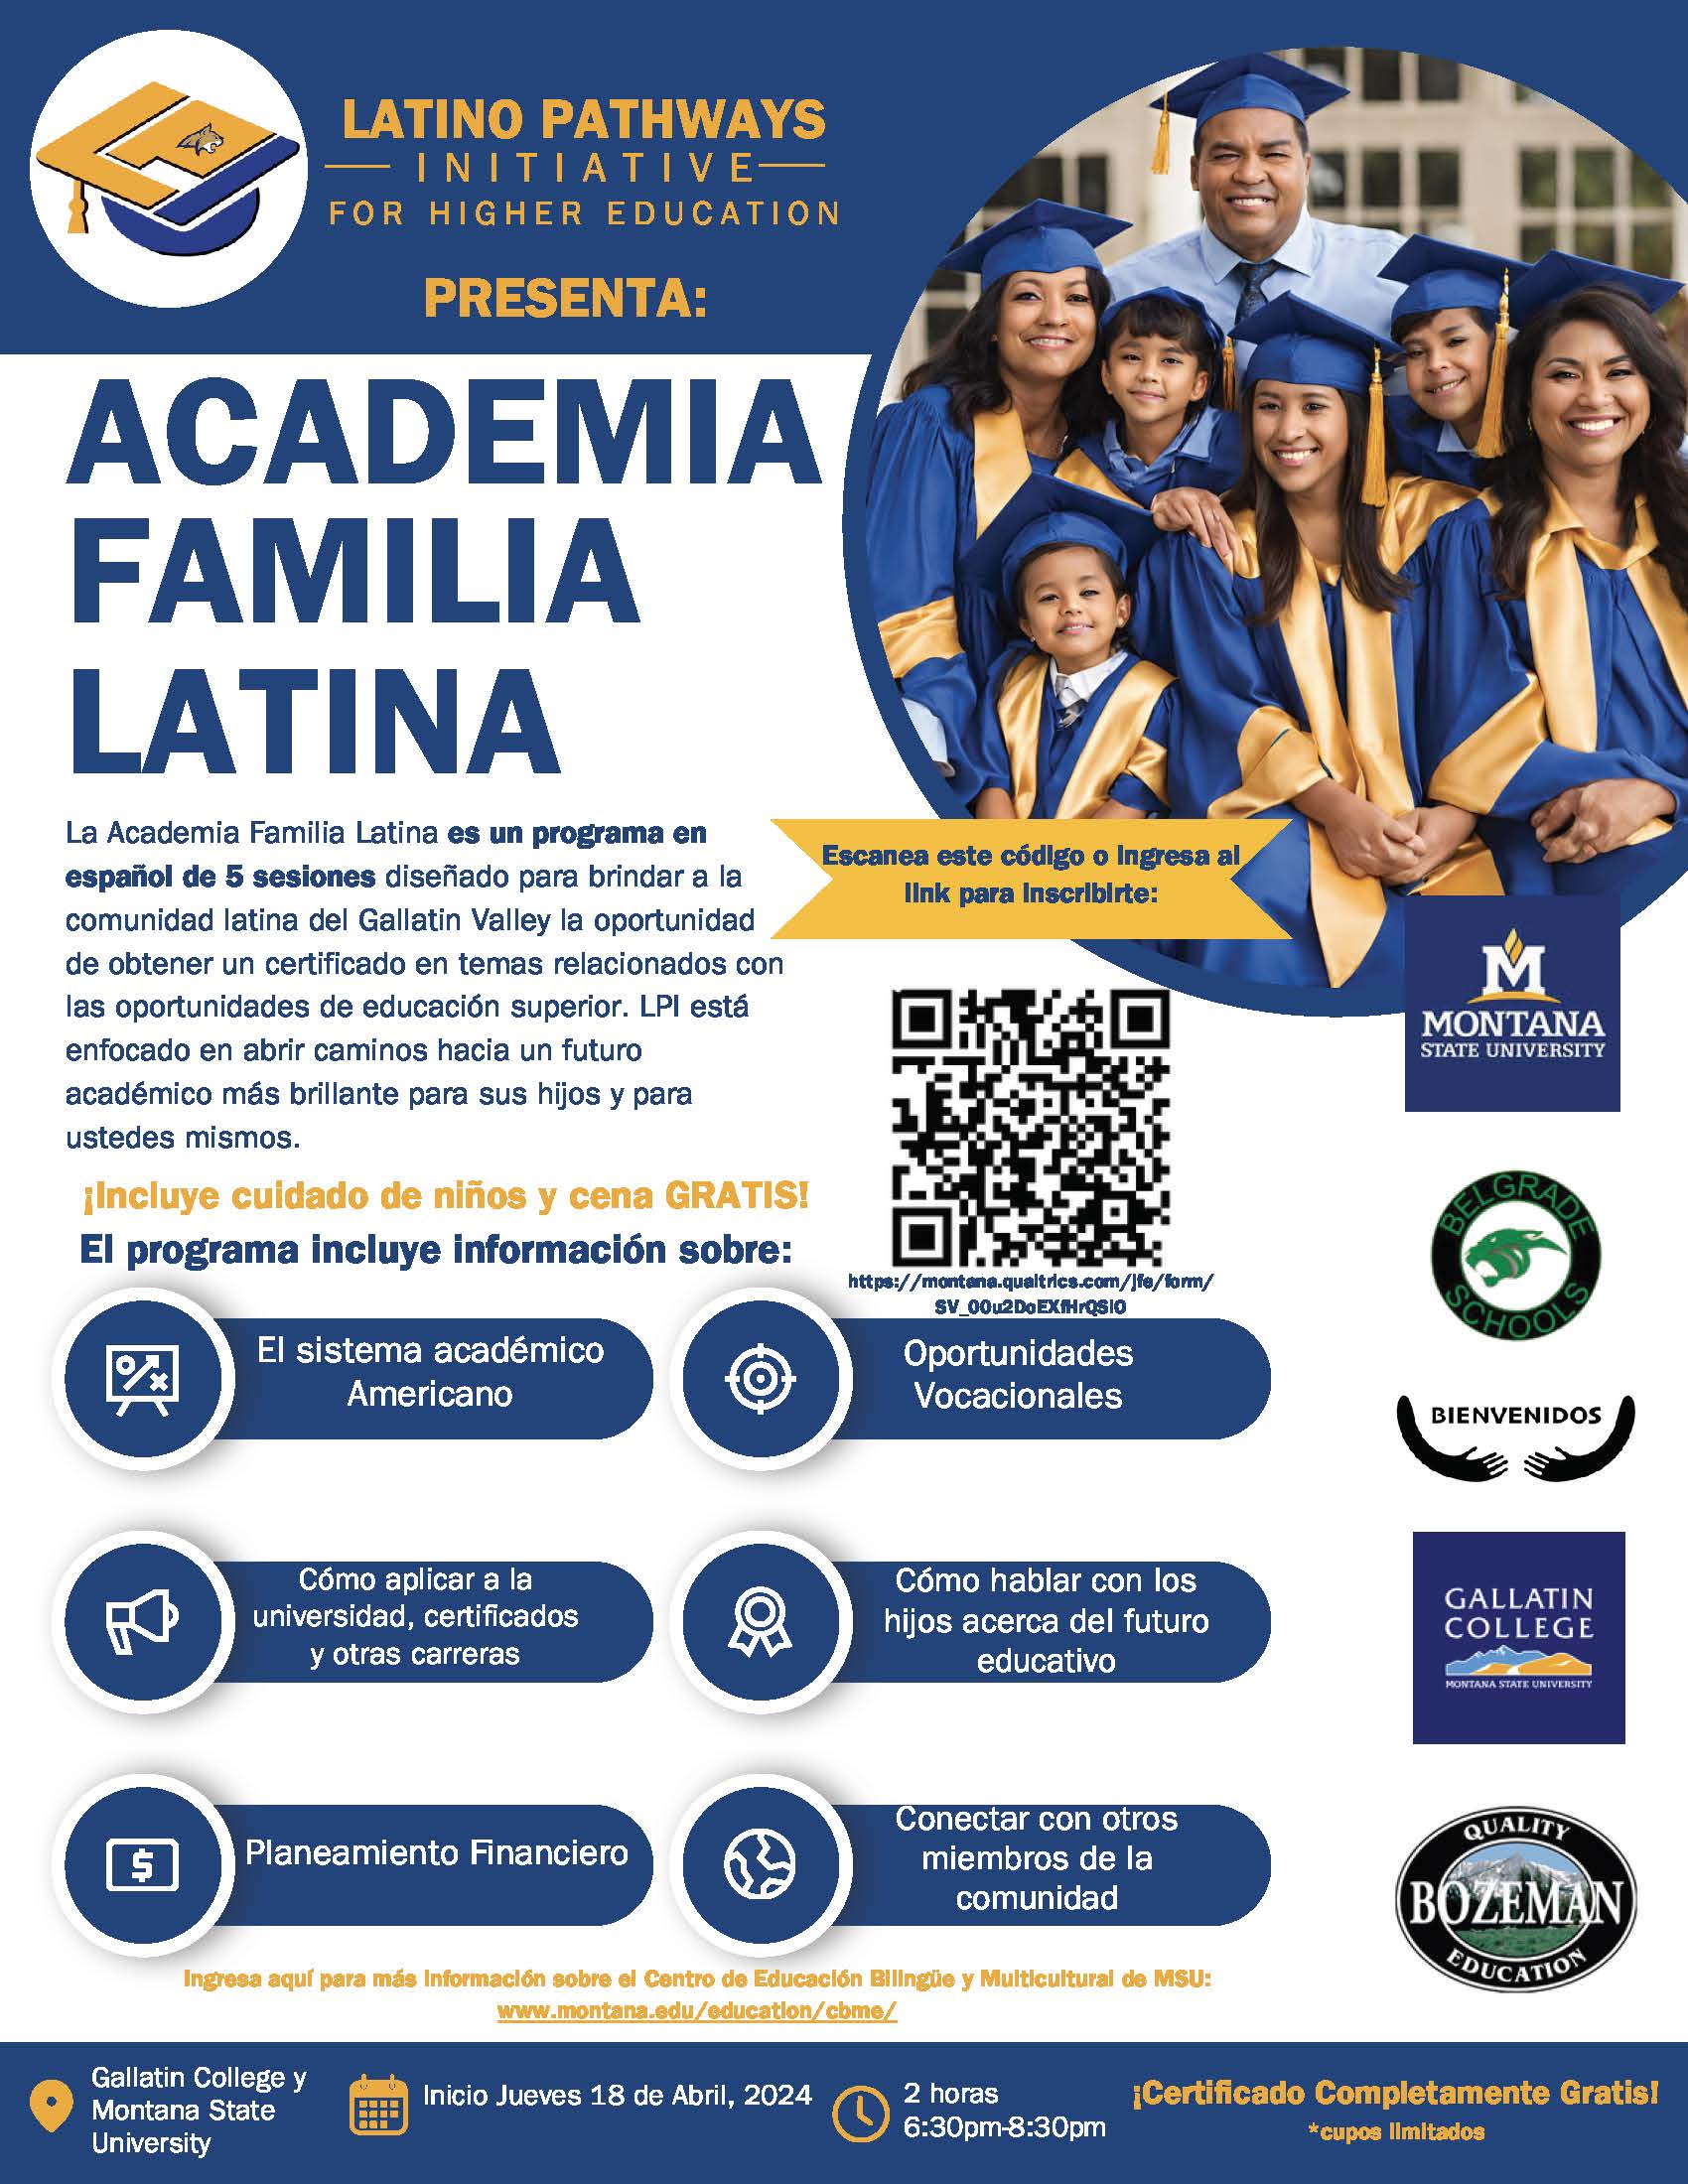 La Academia Familia Latina es un programa en español de 5 sesiones diseñado para brindar a la comunidad latina del Gallatin Valley la oportunidad de obtener un certificado en temas relacionados con las oportunidades de educación superior.